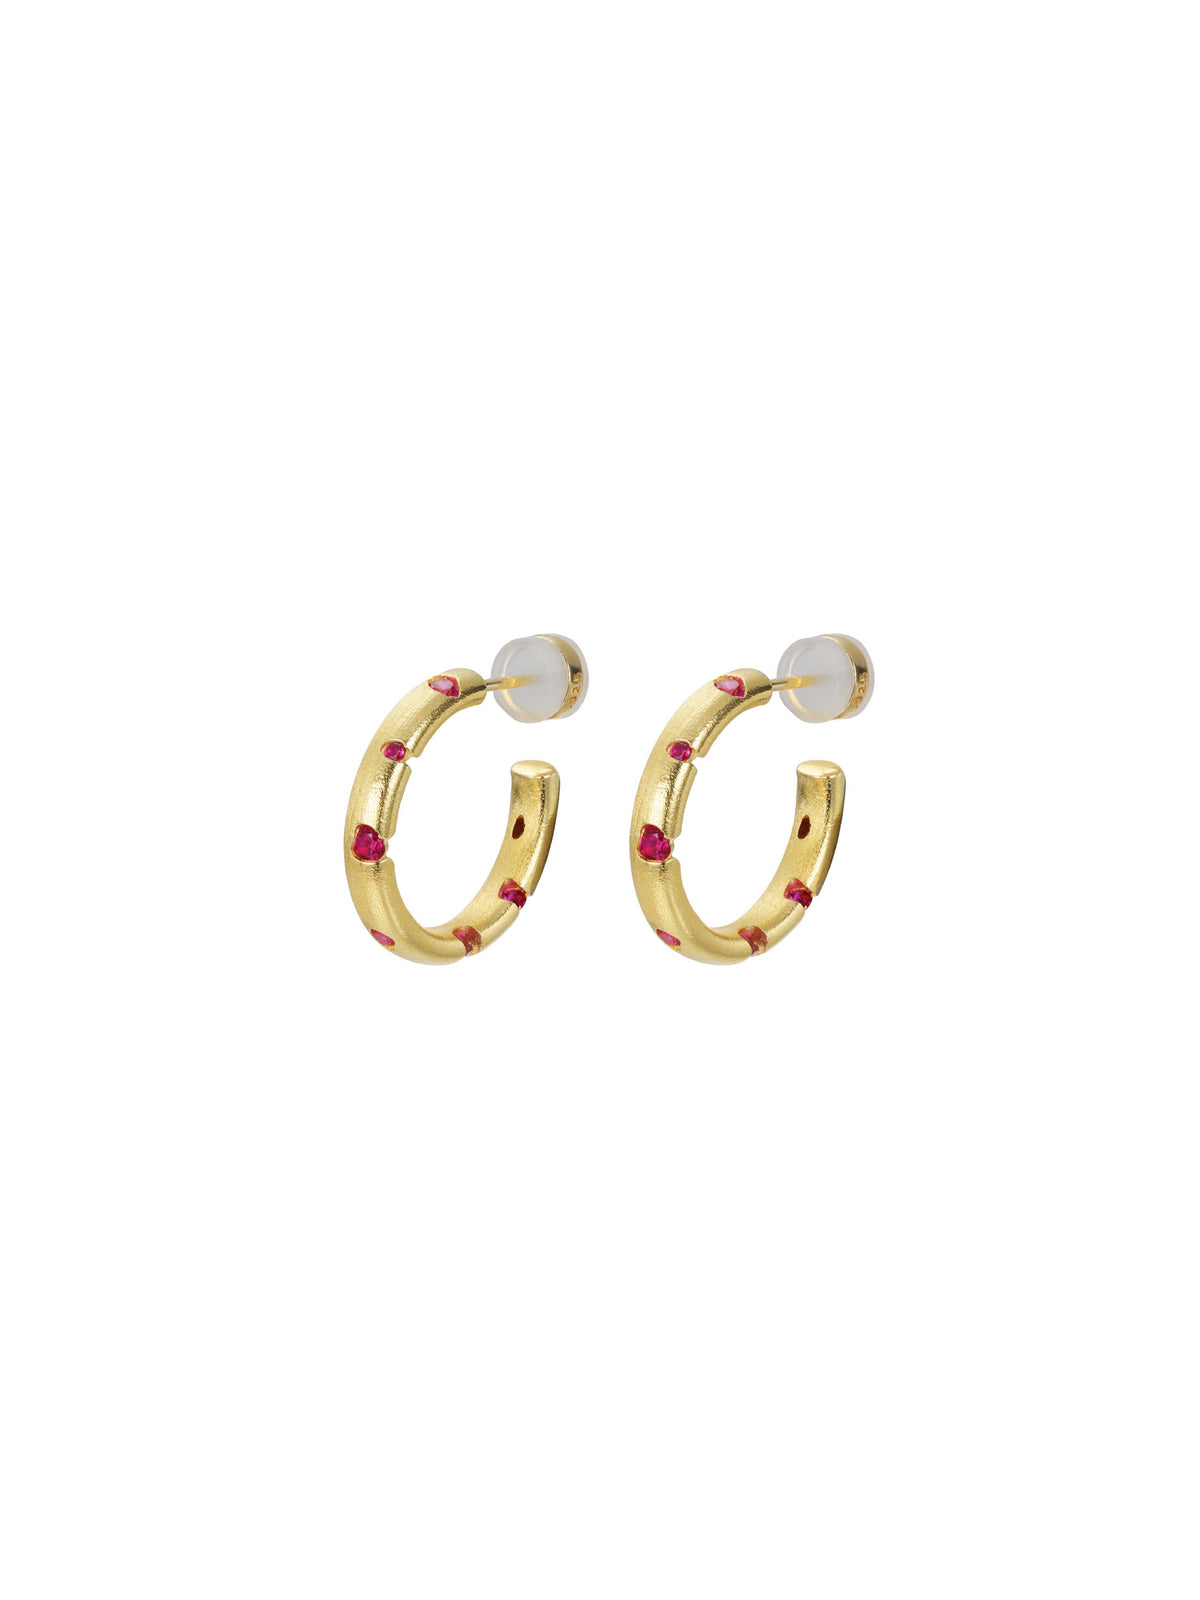 Scattered Earrings (Pair)